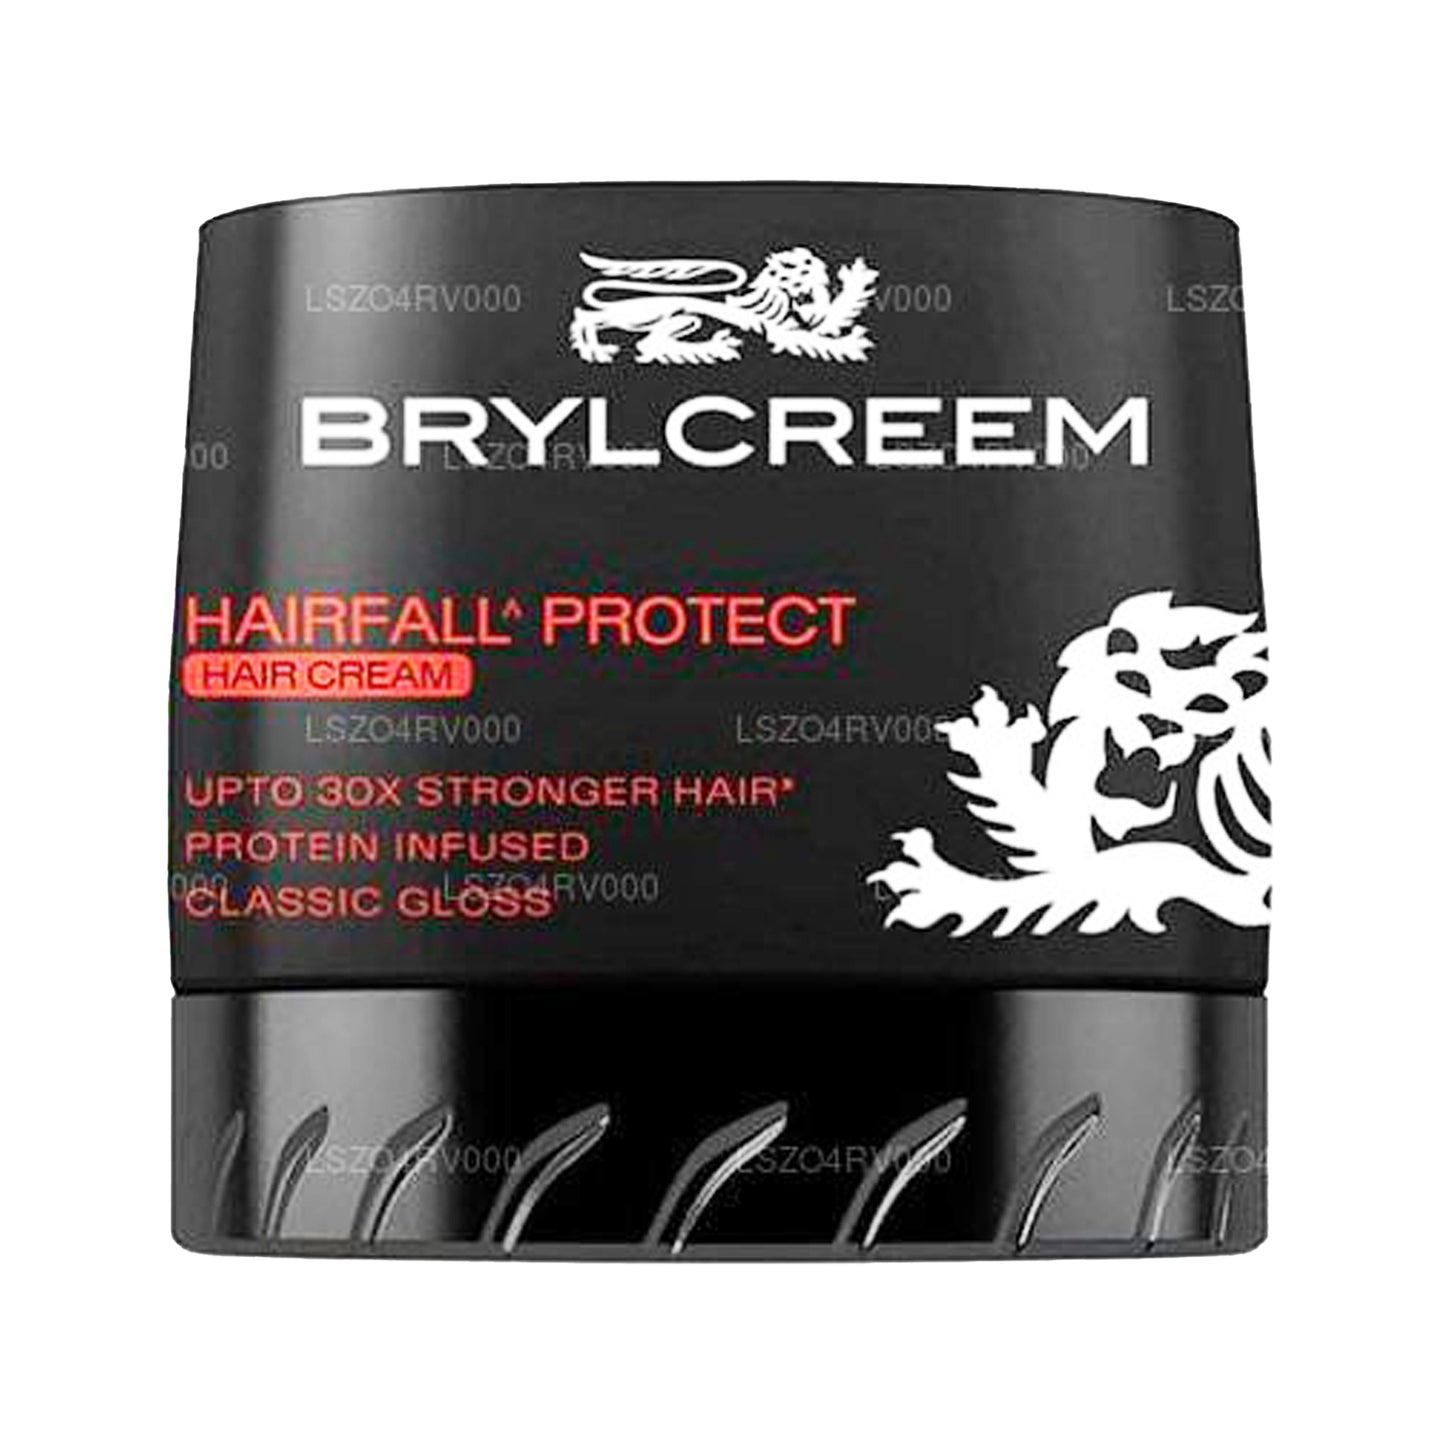 Brylcreem Krem Protect Hairfall (75g)